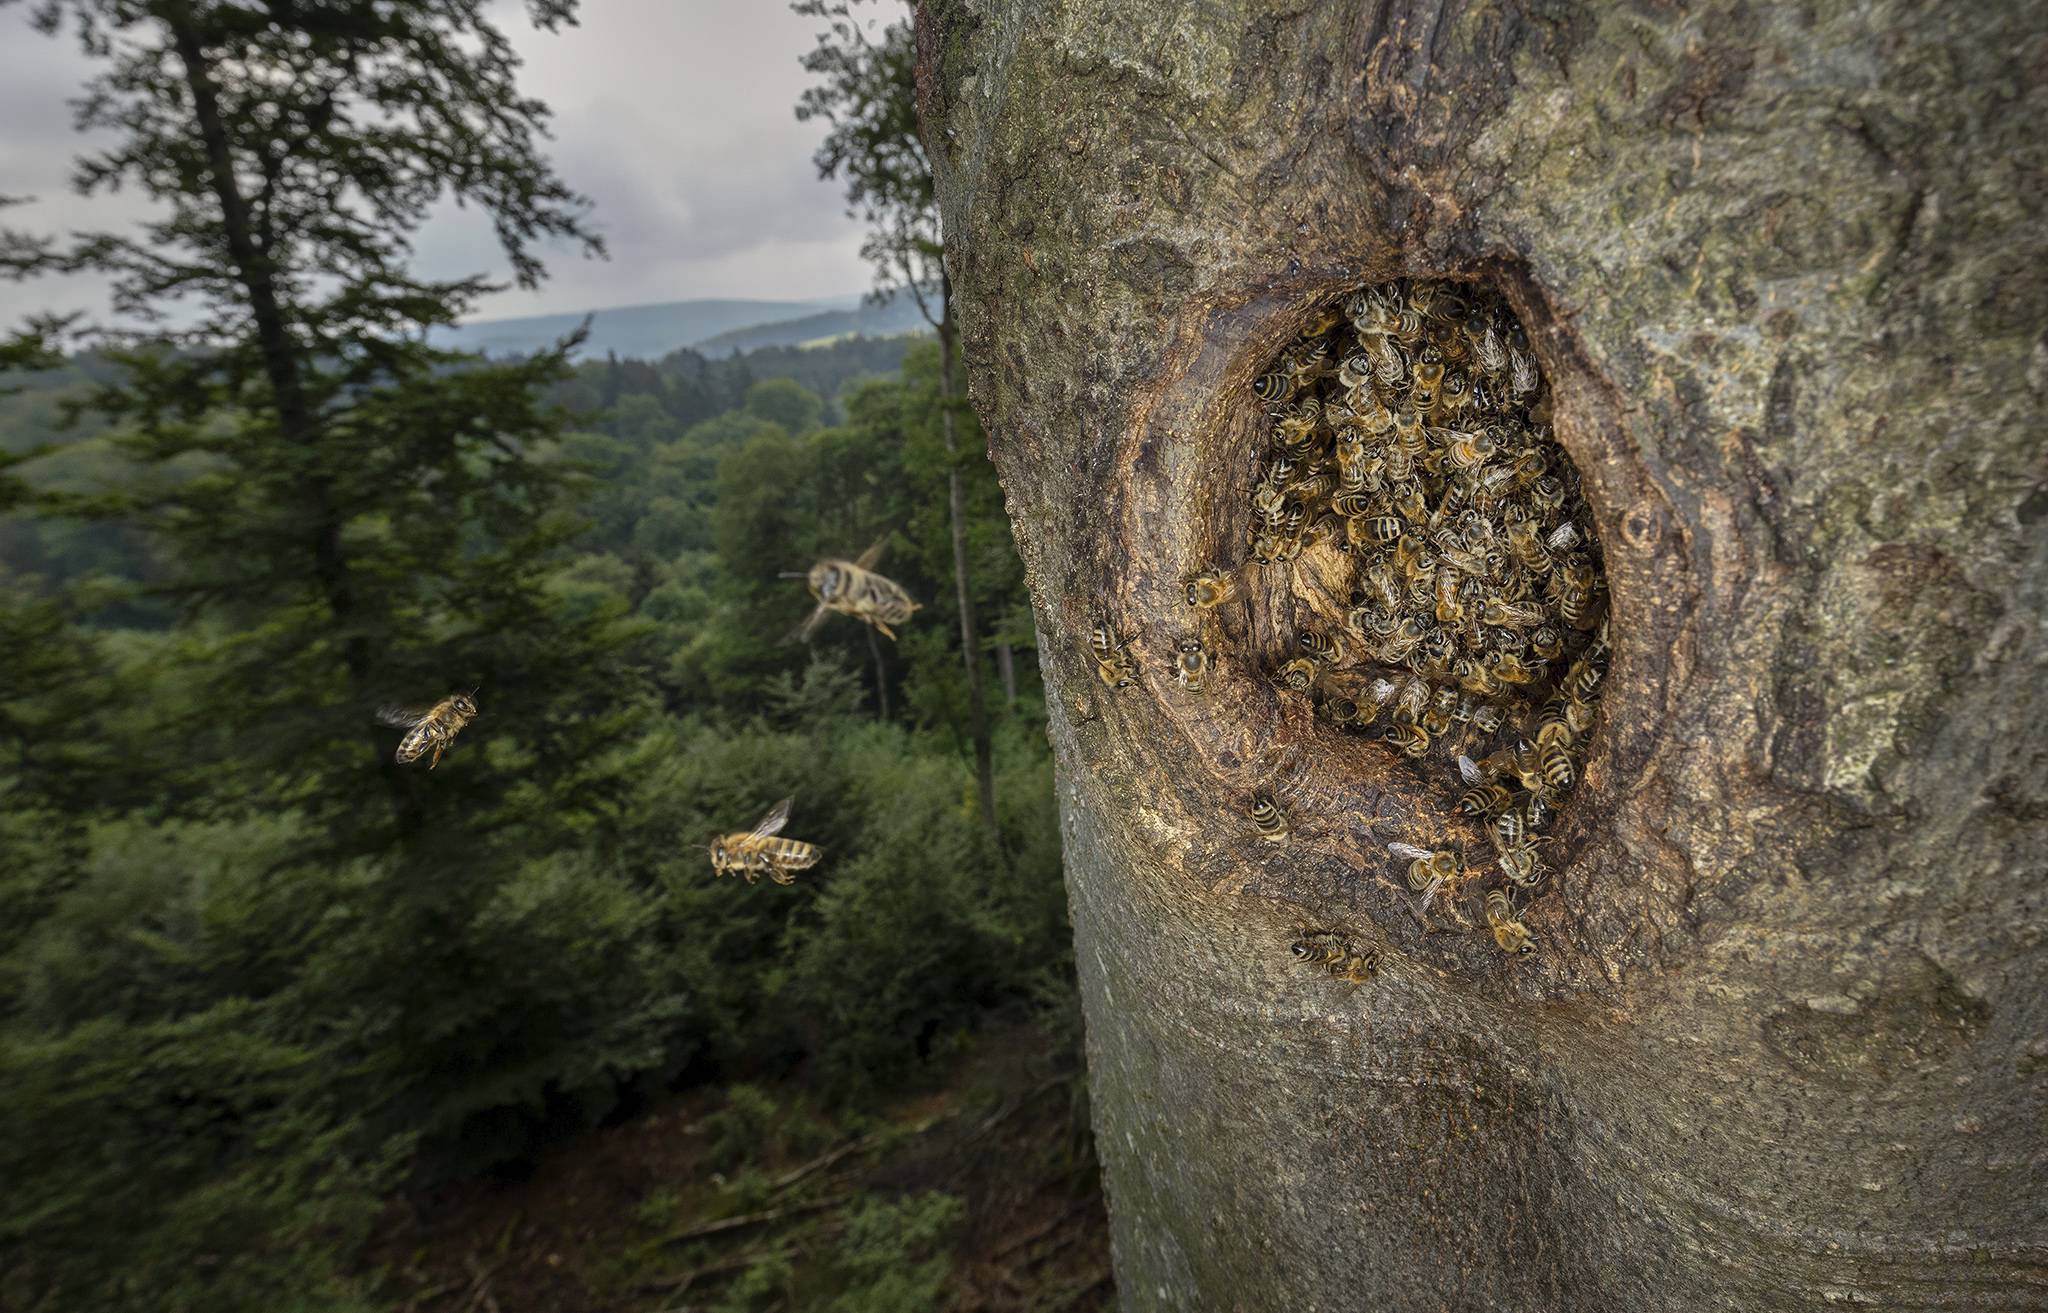 Noch bis zum 5. November ist die Sonderausstellung "Zurück in die Zukunft – Honigbienen im Wald“ zu sehen. In der Ausstellung zeigt der preisgekrönte Naturfotograf Ingo Arndt Bilder von wild lebenden Honigbienen in ihrer ursprünglichen Heimat, unseren Wäldern.